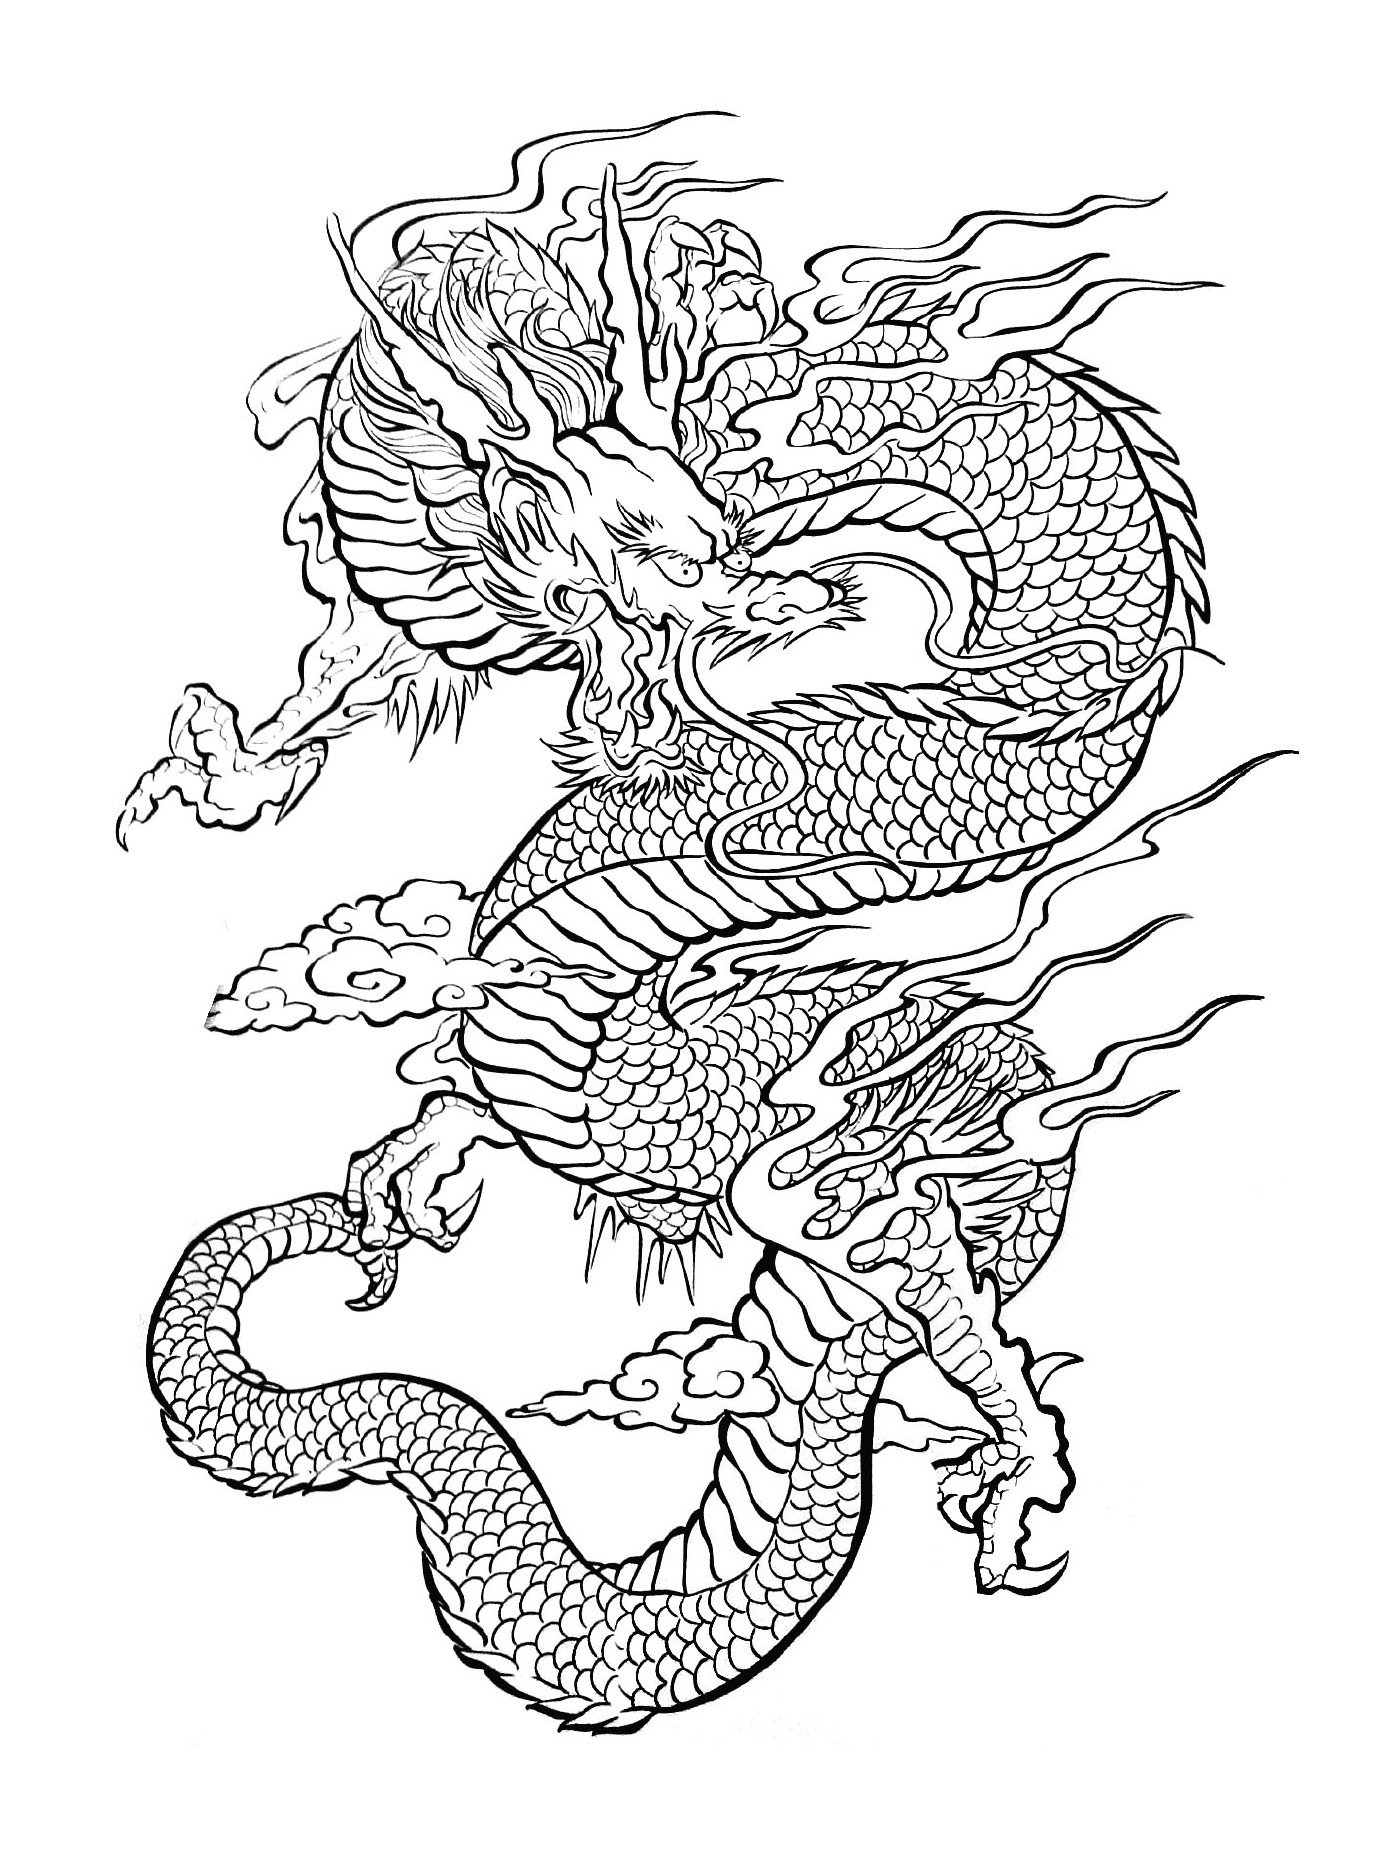  Una ilustración de un dragón oriental volando en el aire 